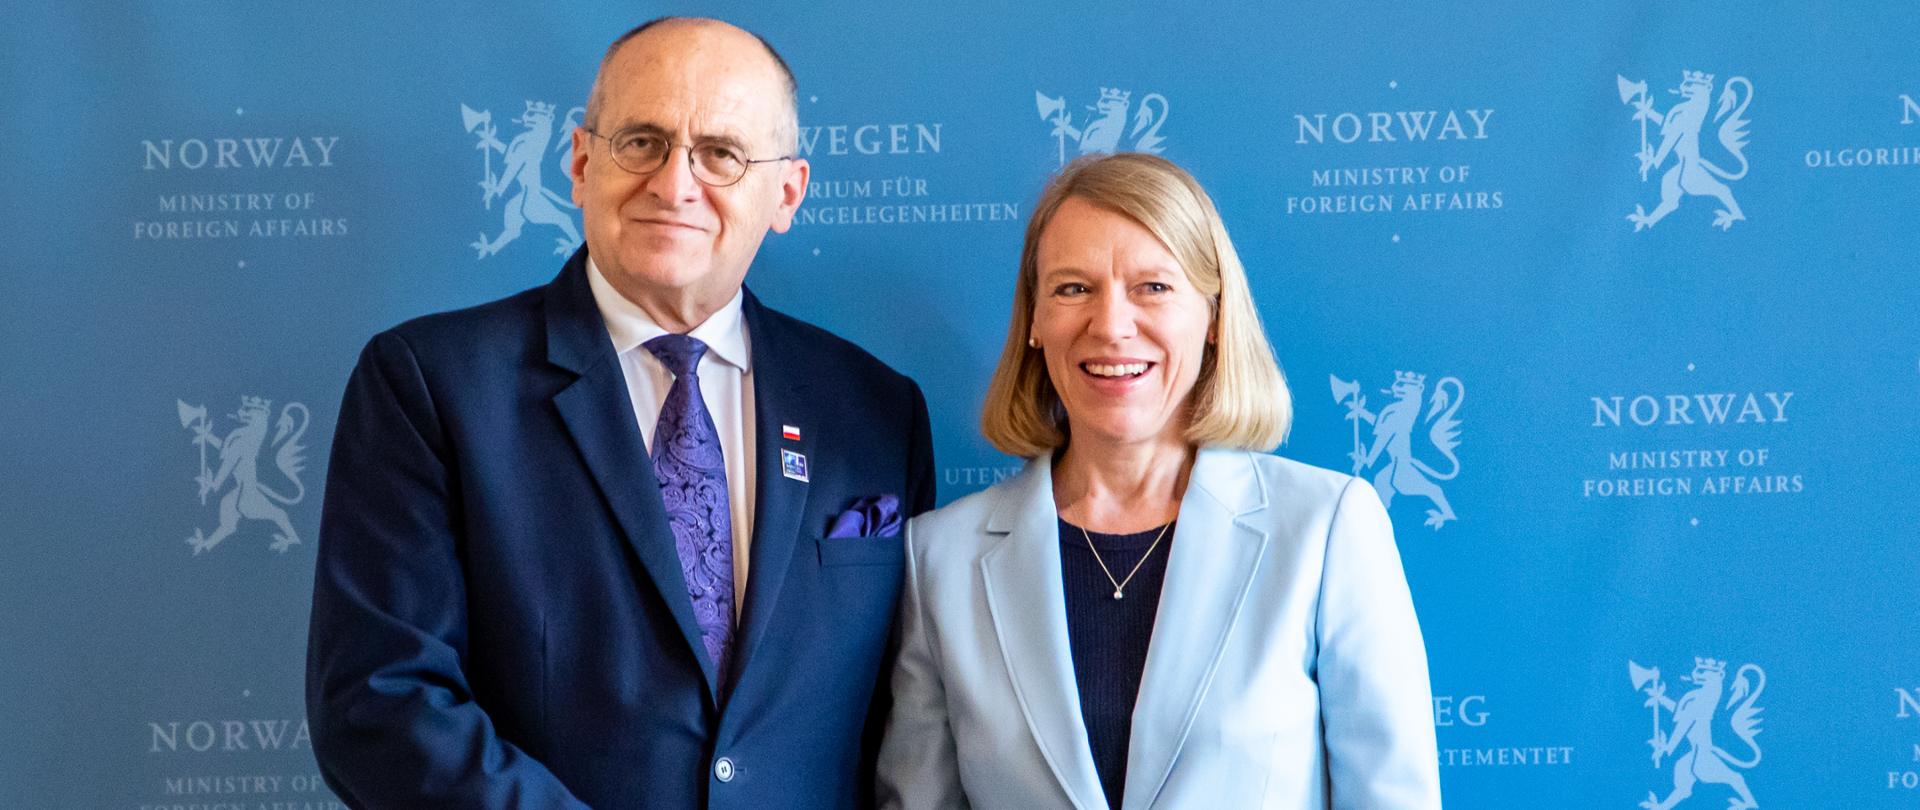 Minister Rau z wizytą w Norwegii